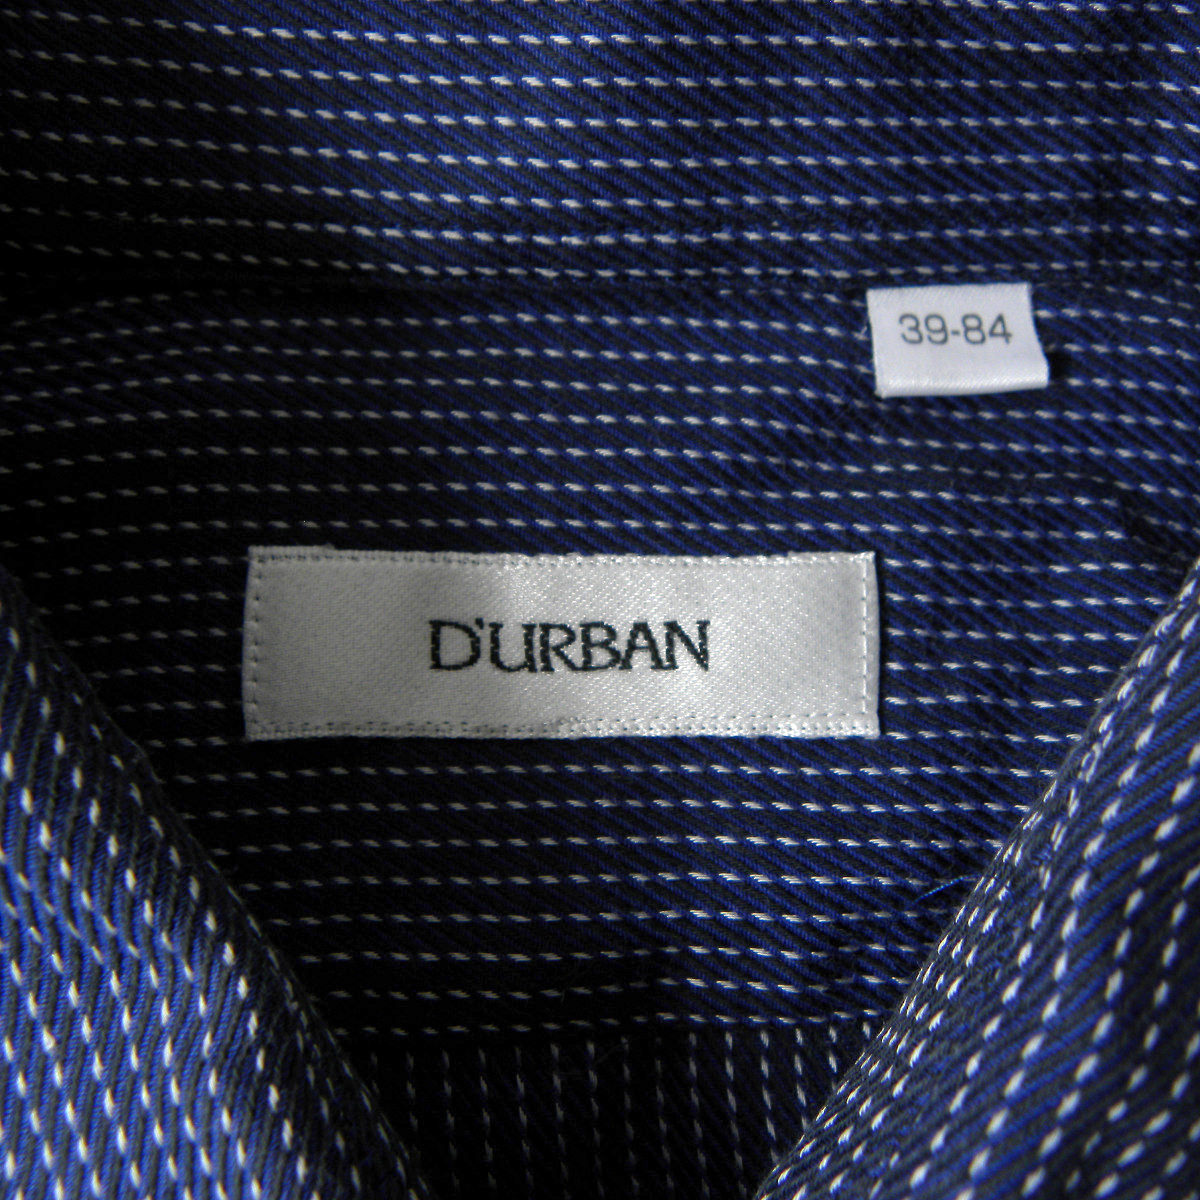 ダーバン D'URBAN コットン100% ピンストライプ柄レギュラーカラーシャツ 長袖 39-84 ネイビー m0222-13の画像3